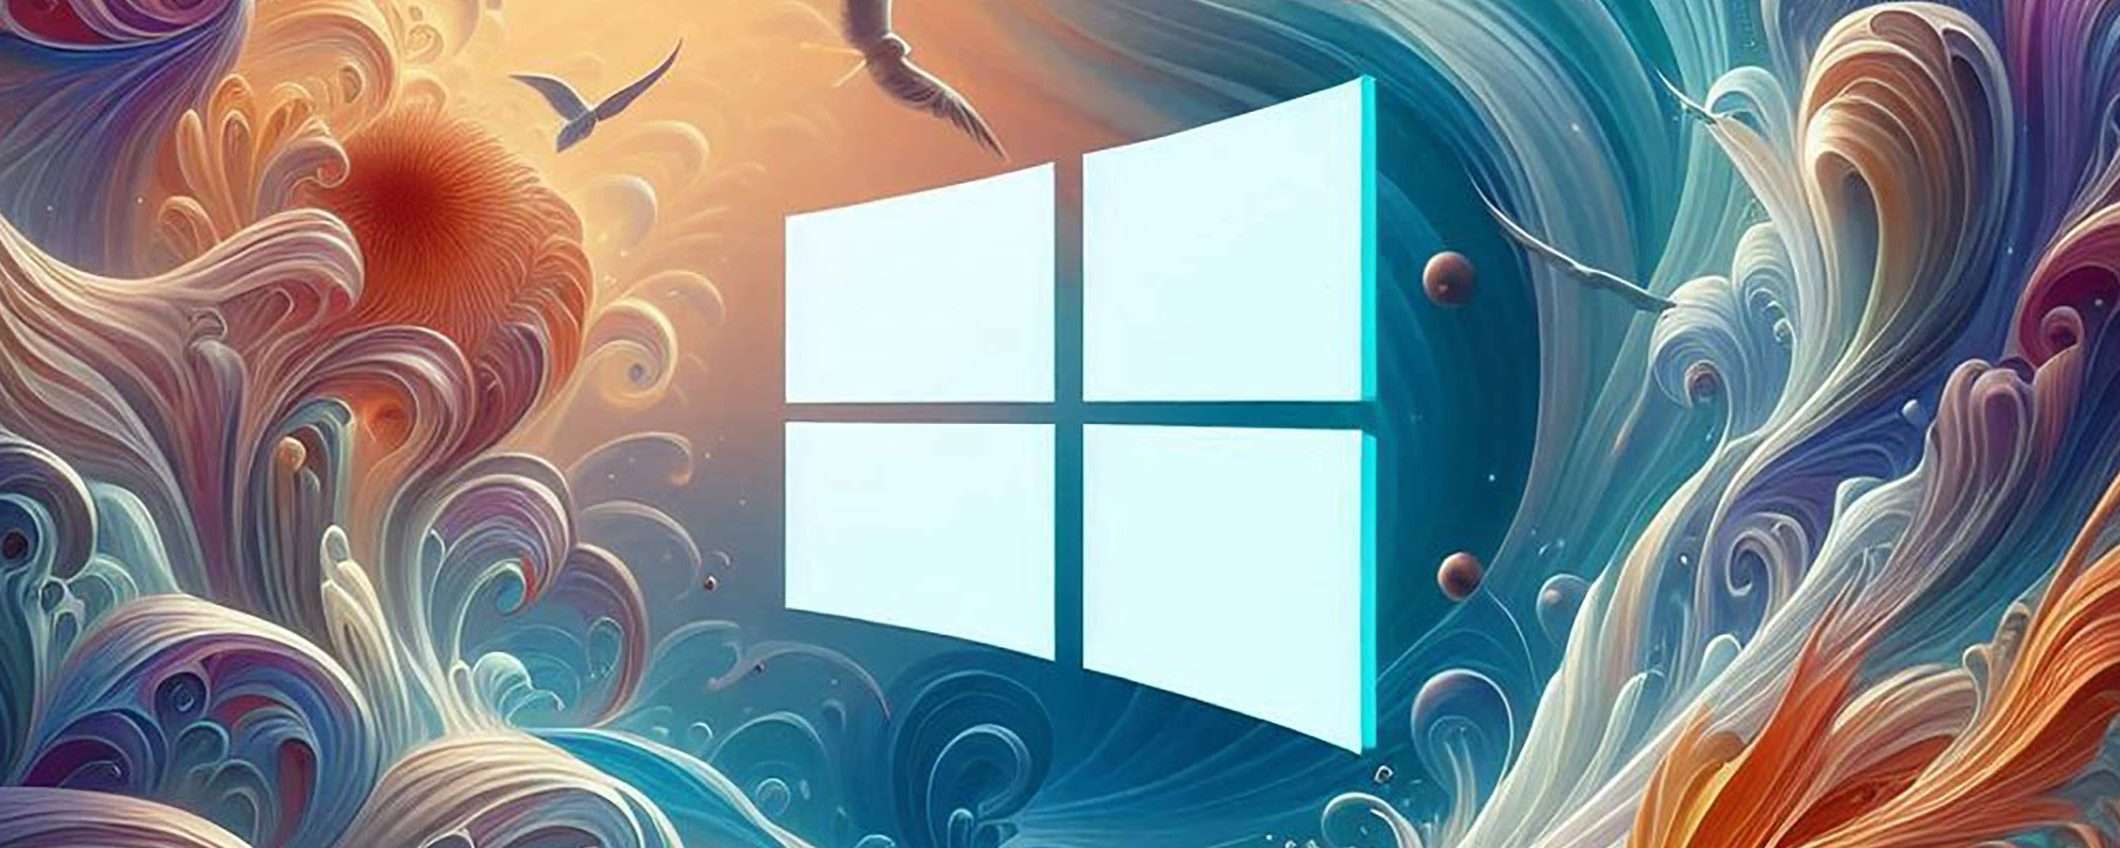 Windows 10 giù, Windows 11 cresce: come vanno gli OS desktop?